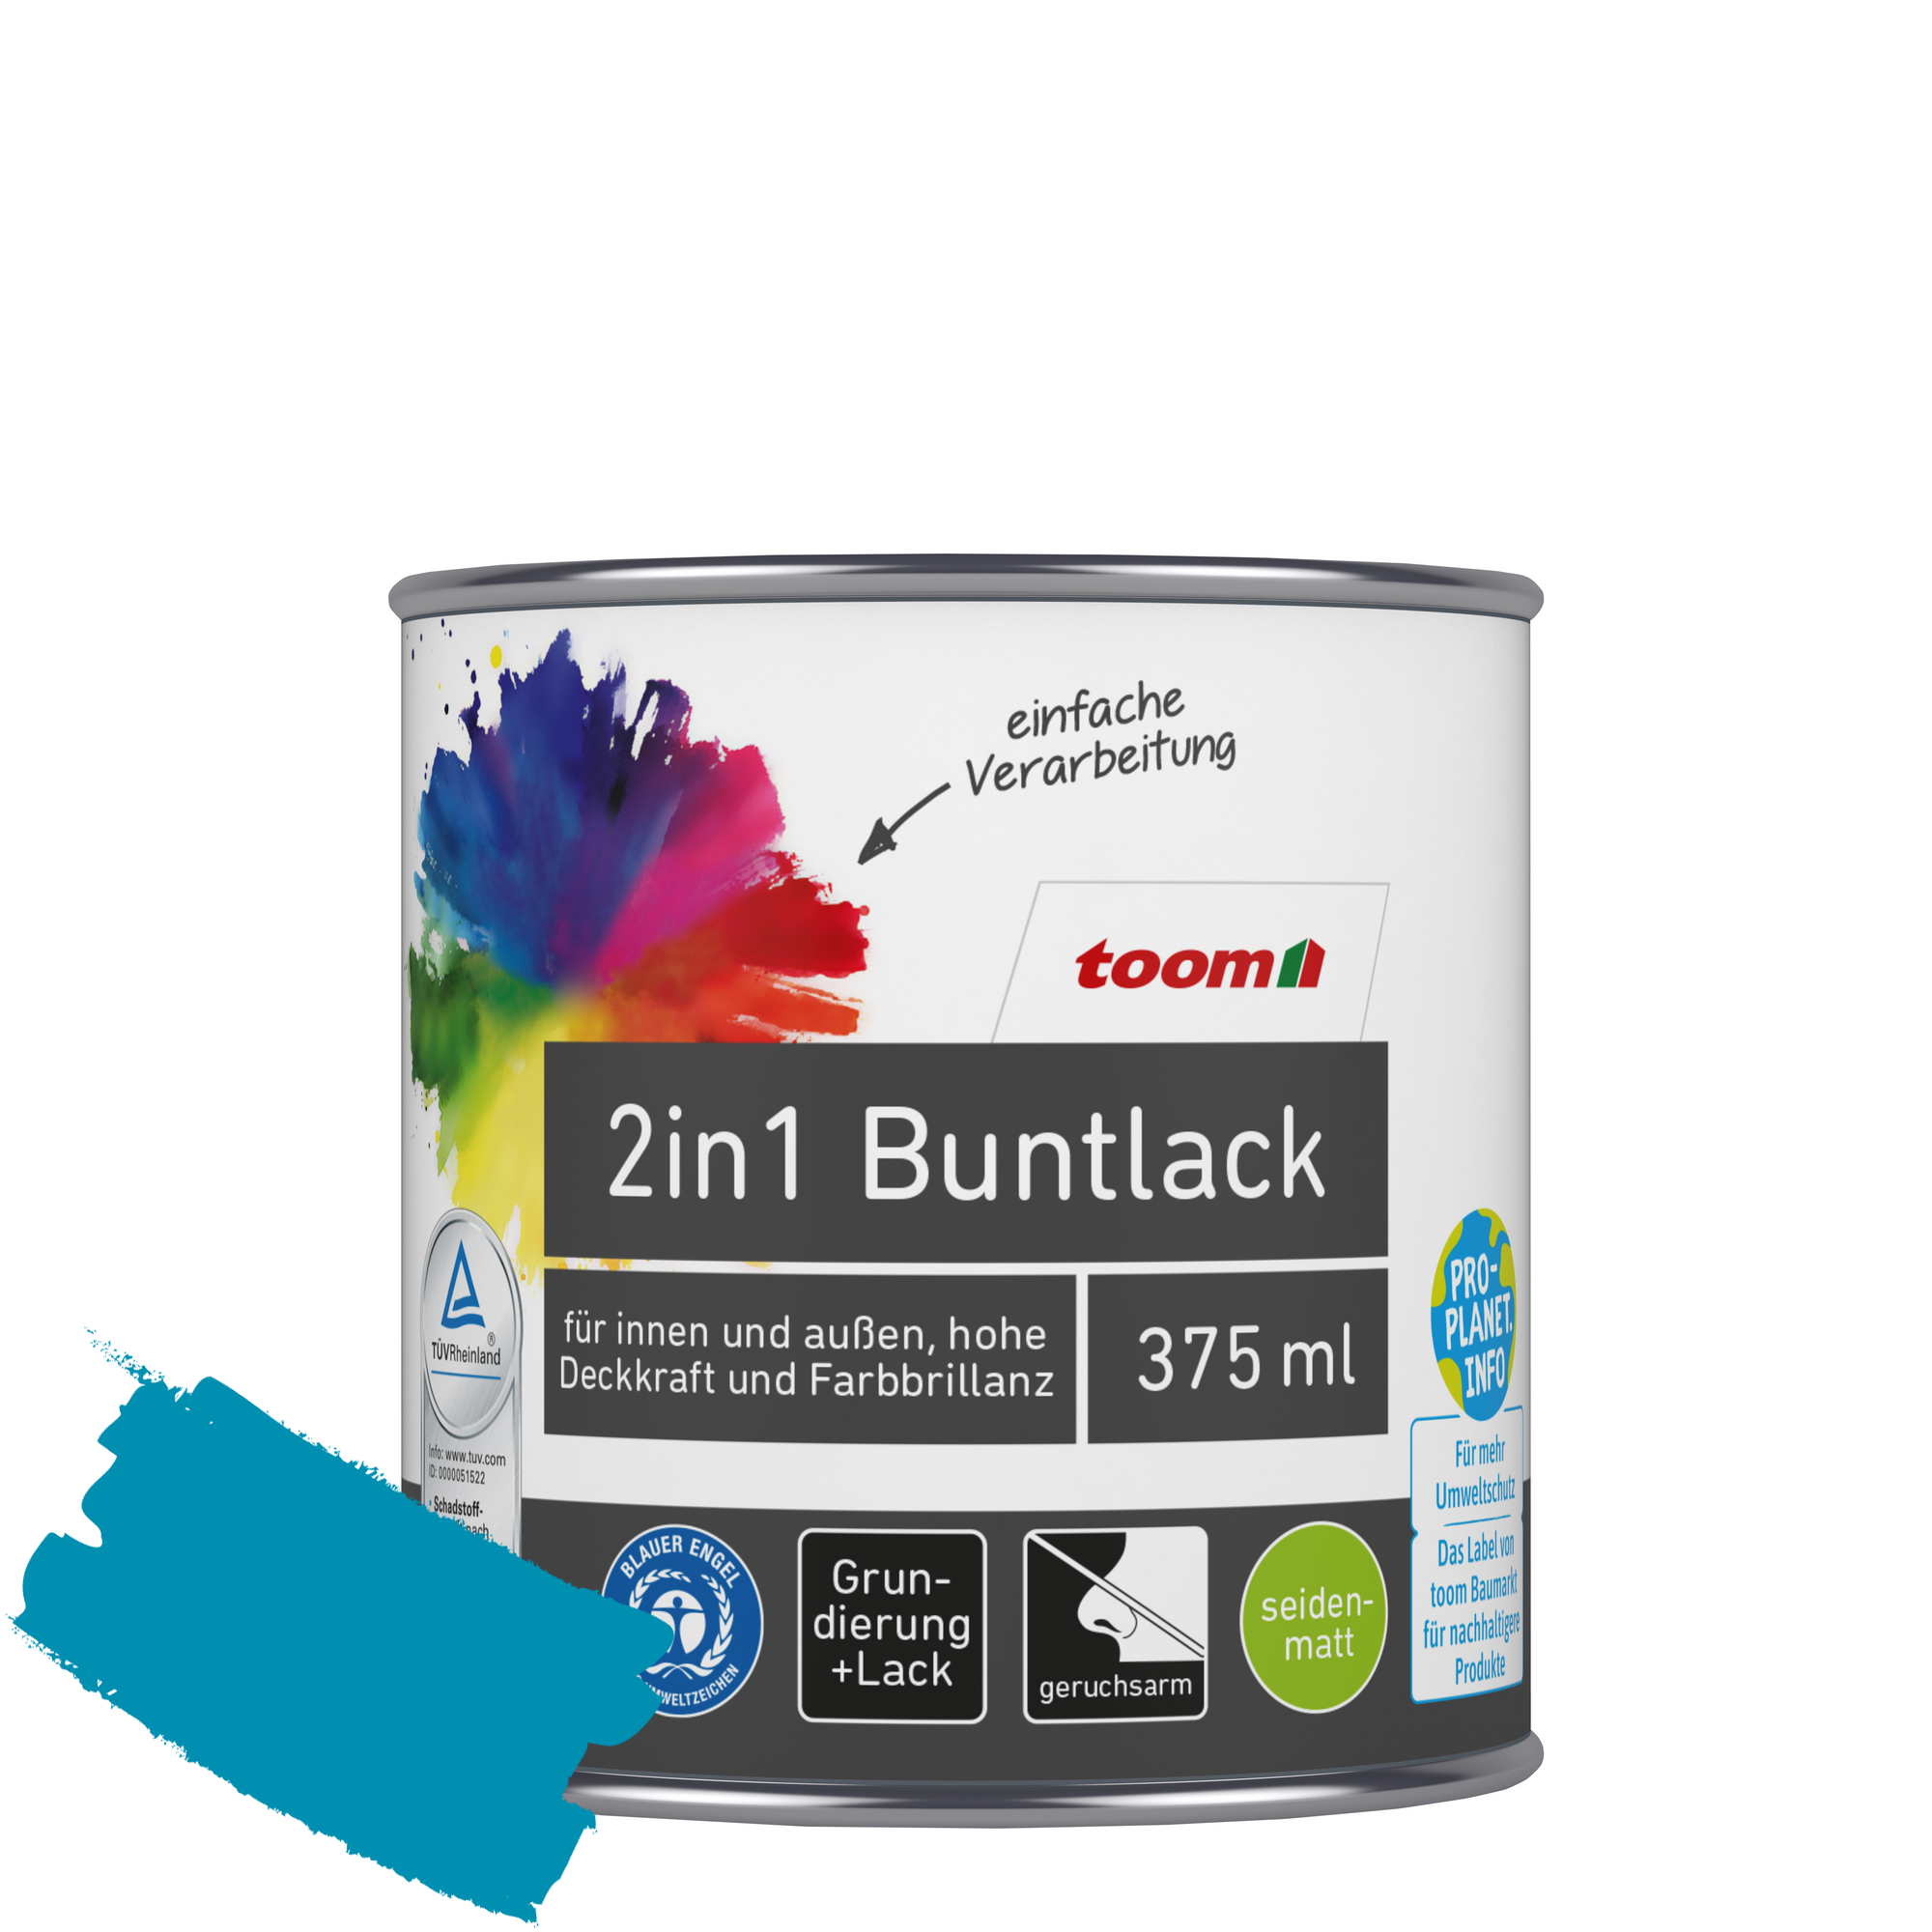 2in1 Buntlack 'Aquamarine' lichtblau seidenmatt 375 ml + product picture